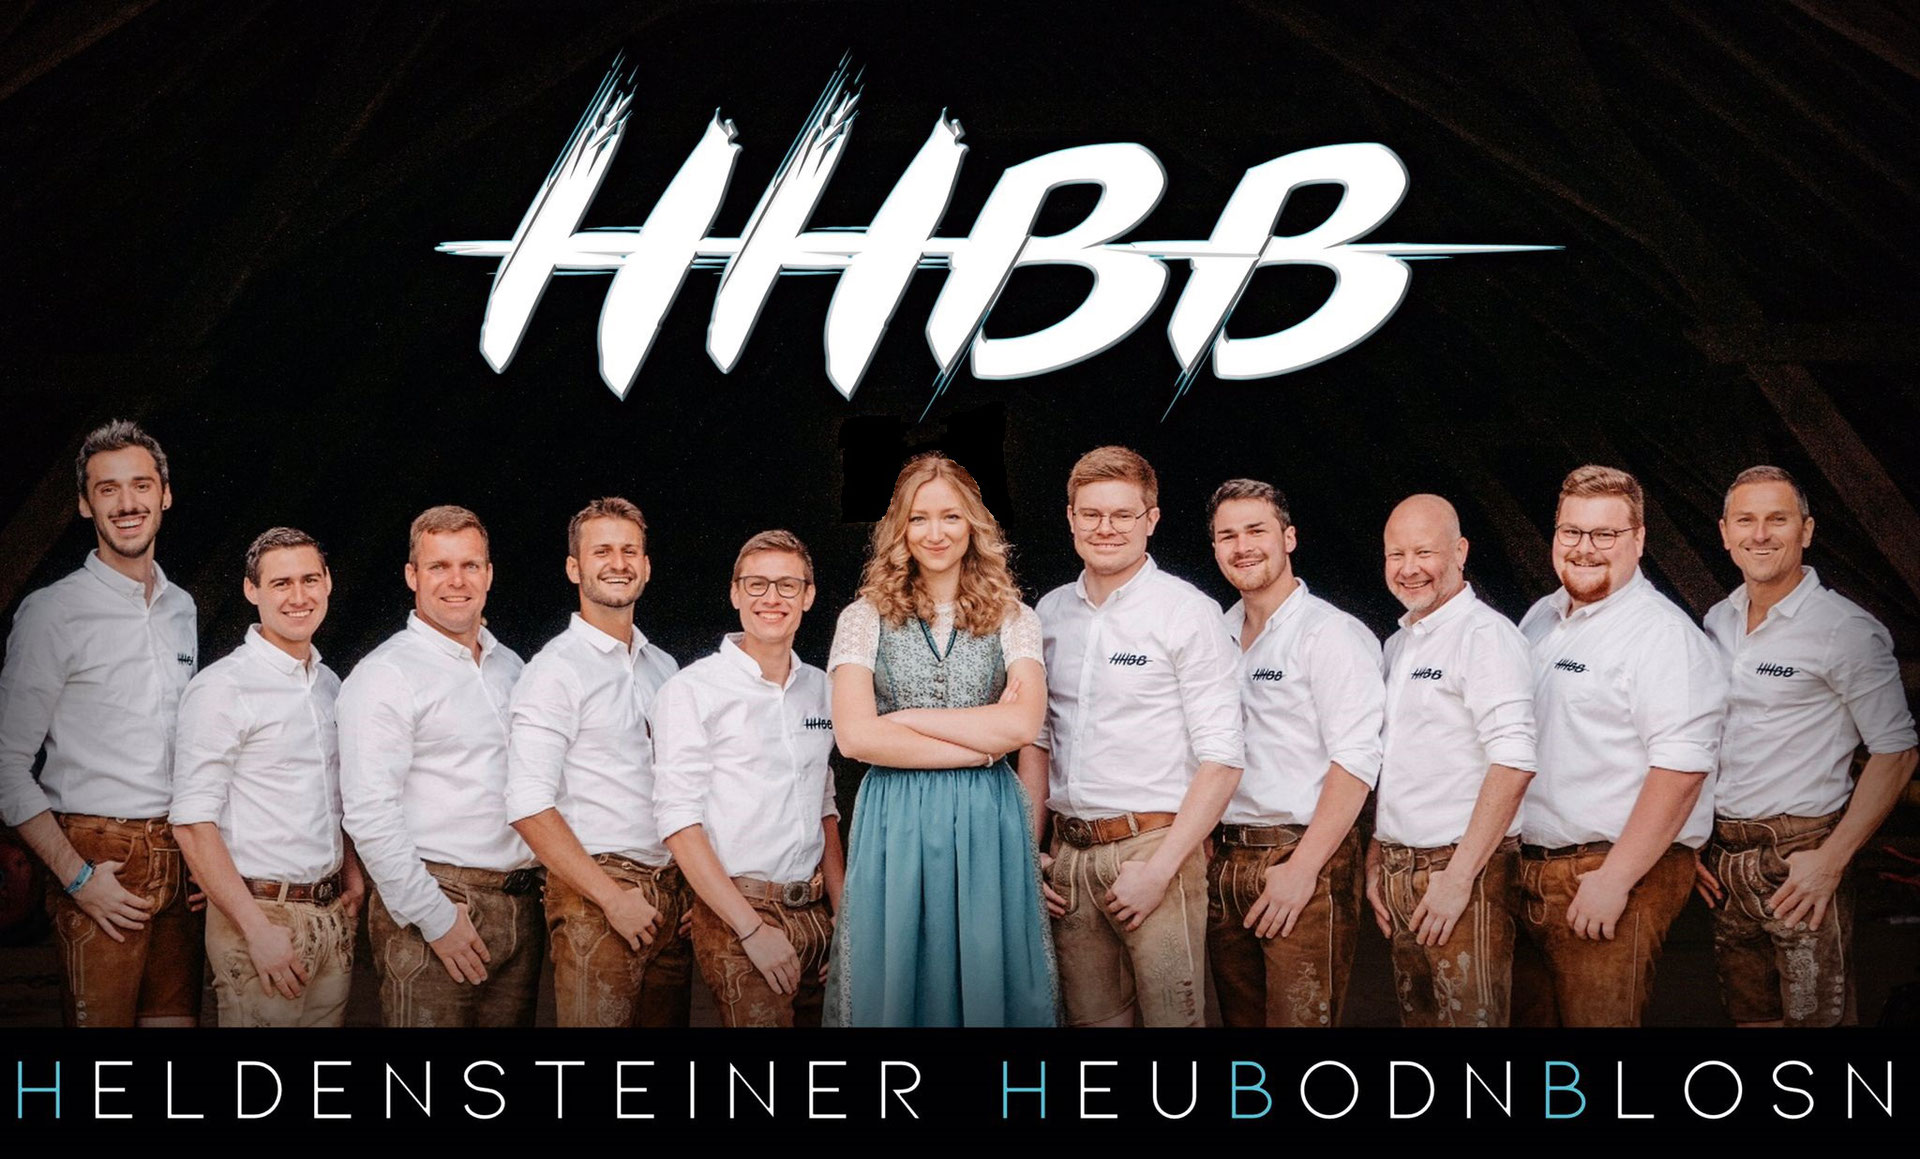 (c) Hhbb.net